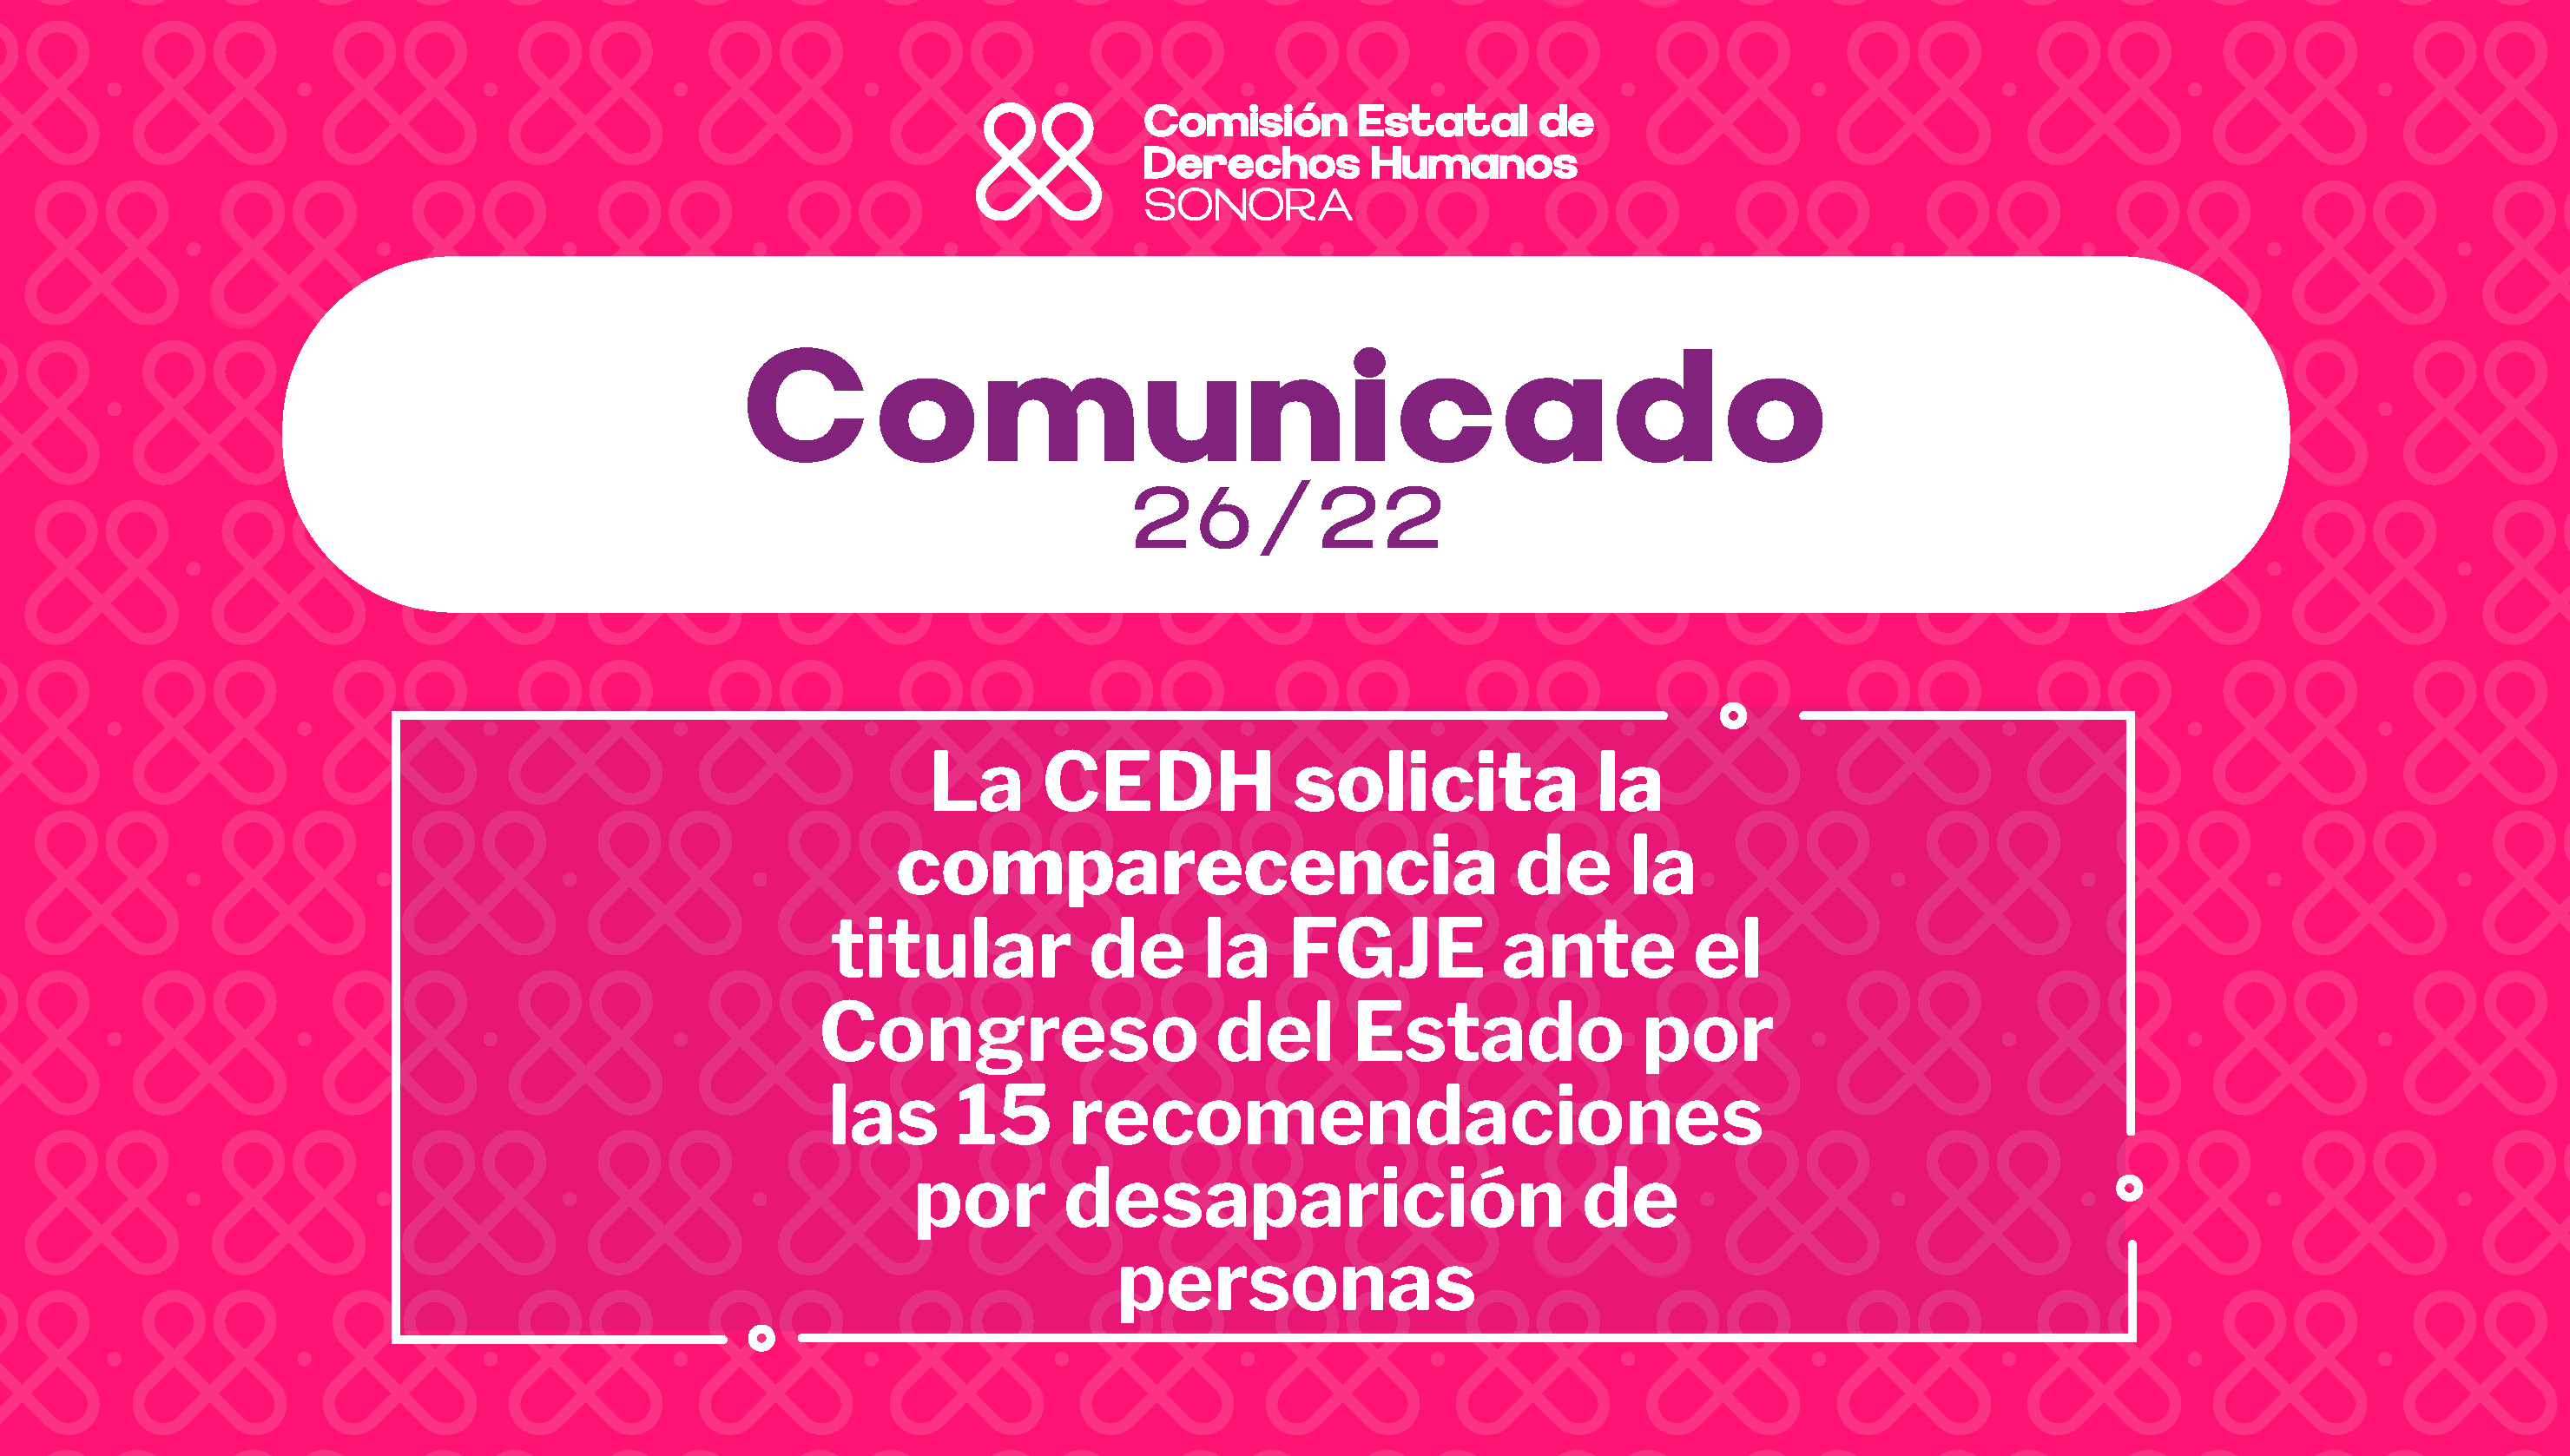 La CEDH solicita la comparecencia de la titular de la FGJE ante el Congreso del Estado por las 15 recomendaciones por desaparición de personas